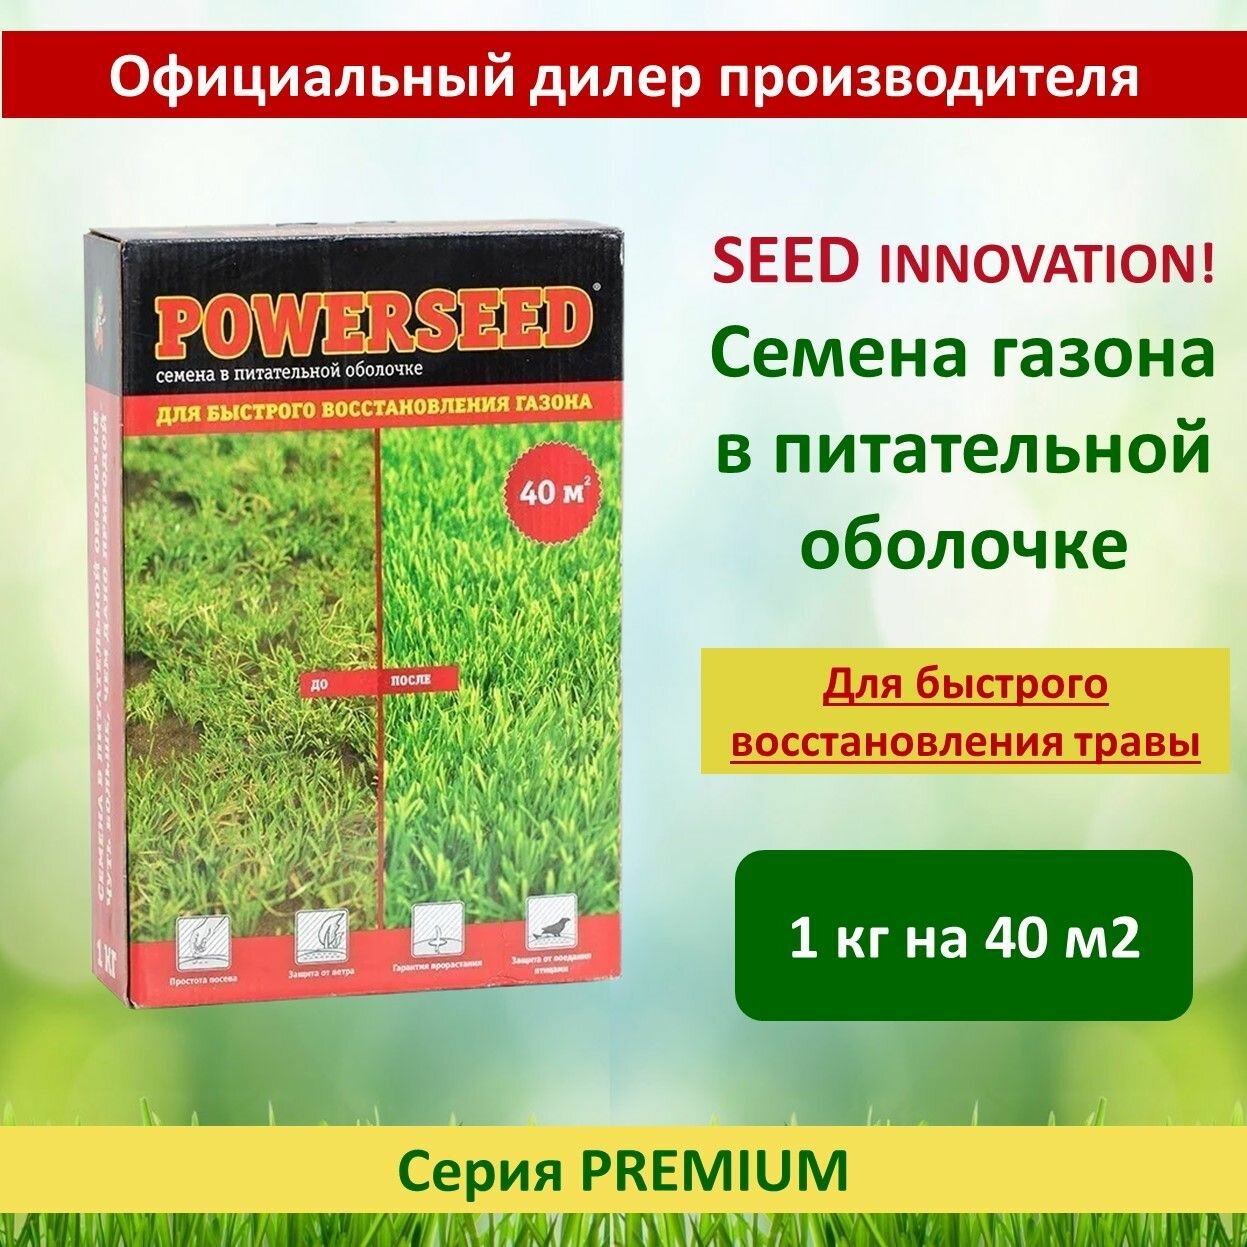 Семена газона в питательной оболочке Powerseed для быстрого восстановления газона 1 кг